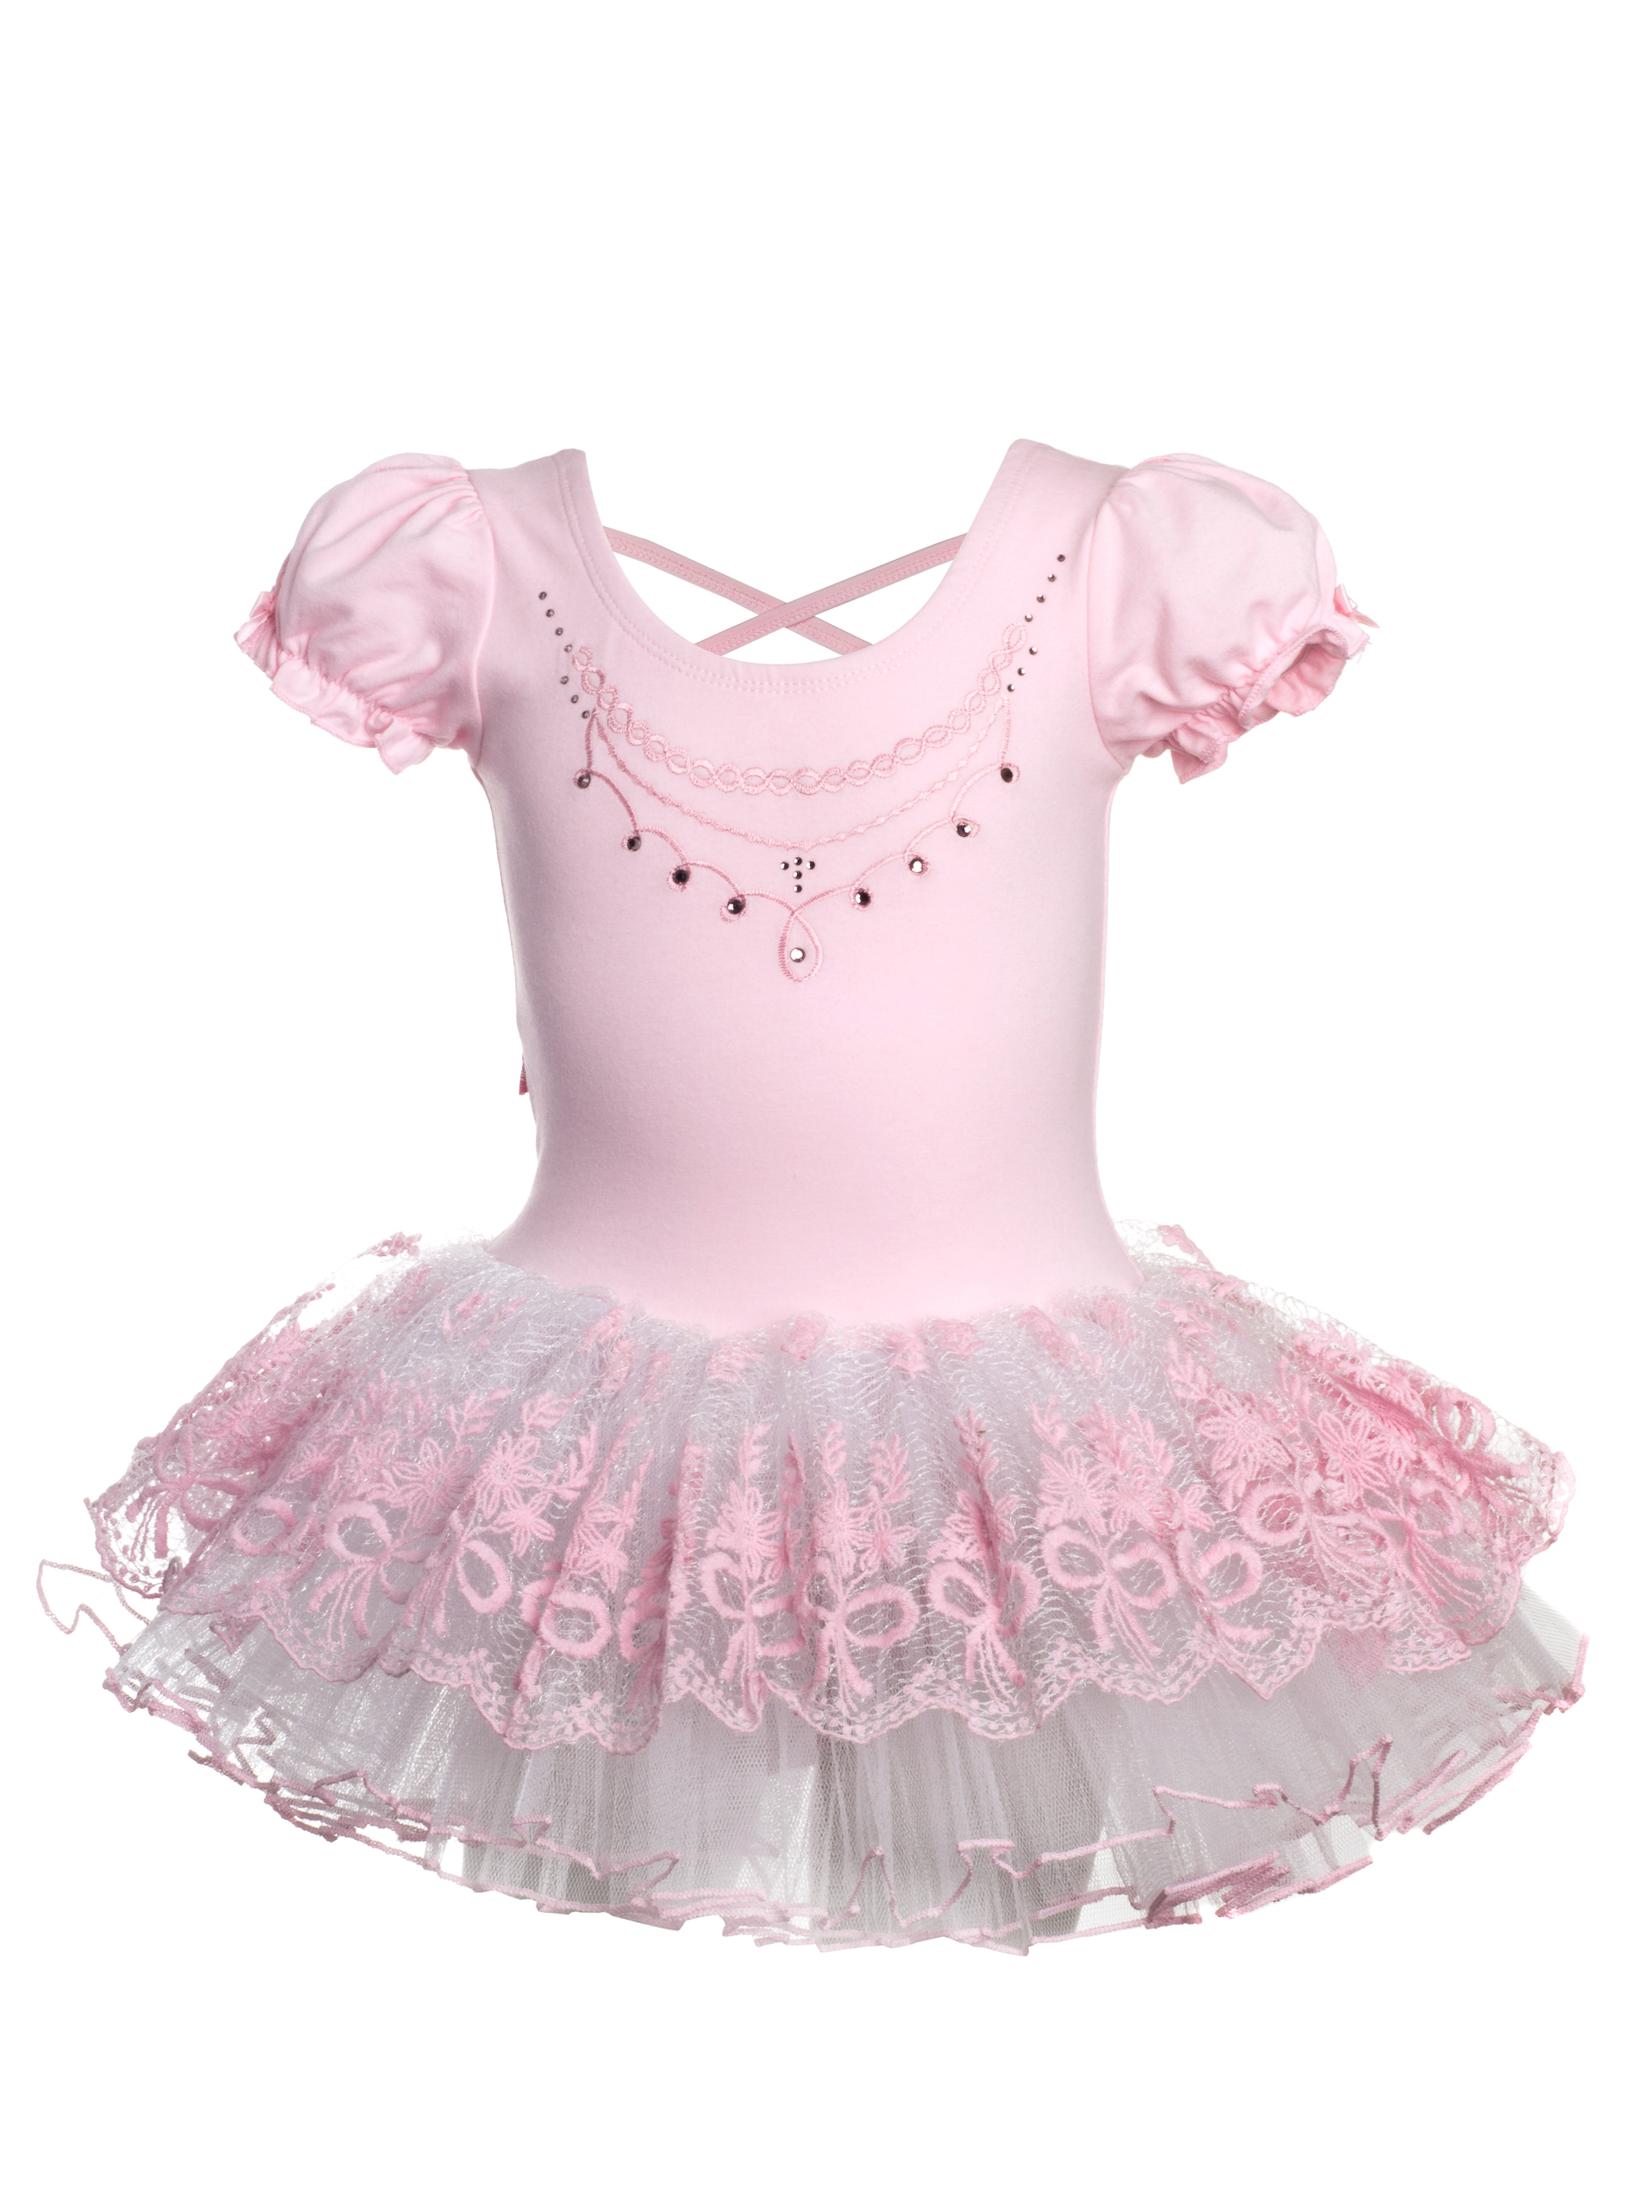 Selected image for GALA UNIQ Triko sa suknjom za balet za devojčice 1218 roze